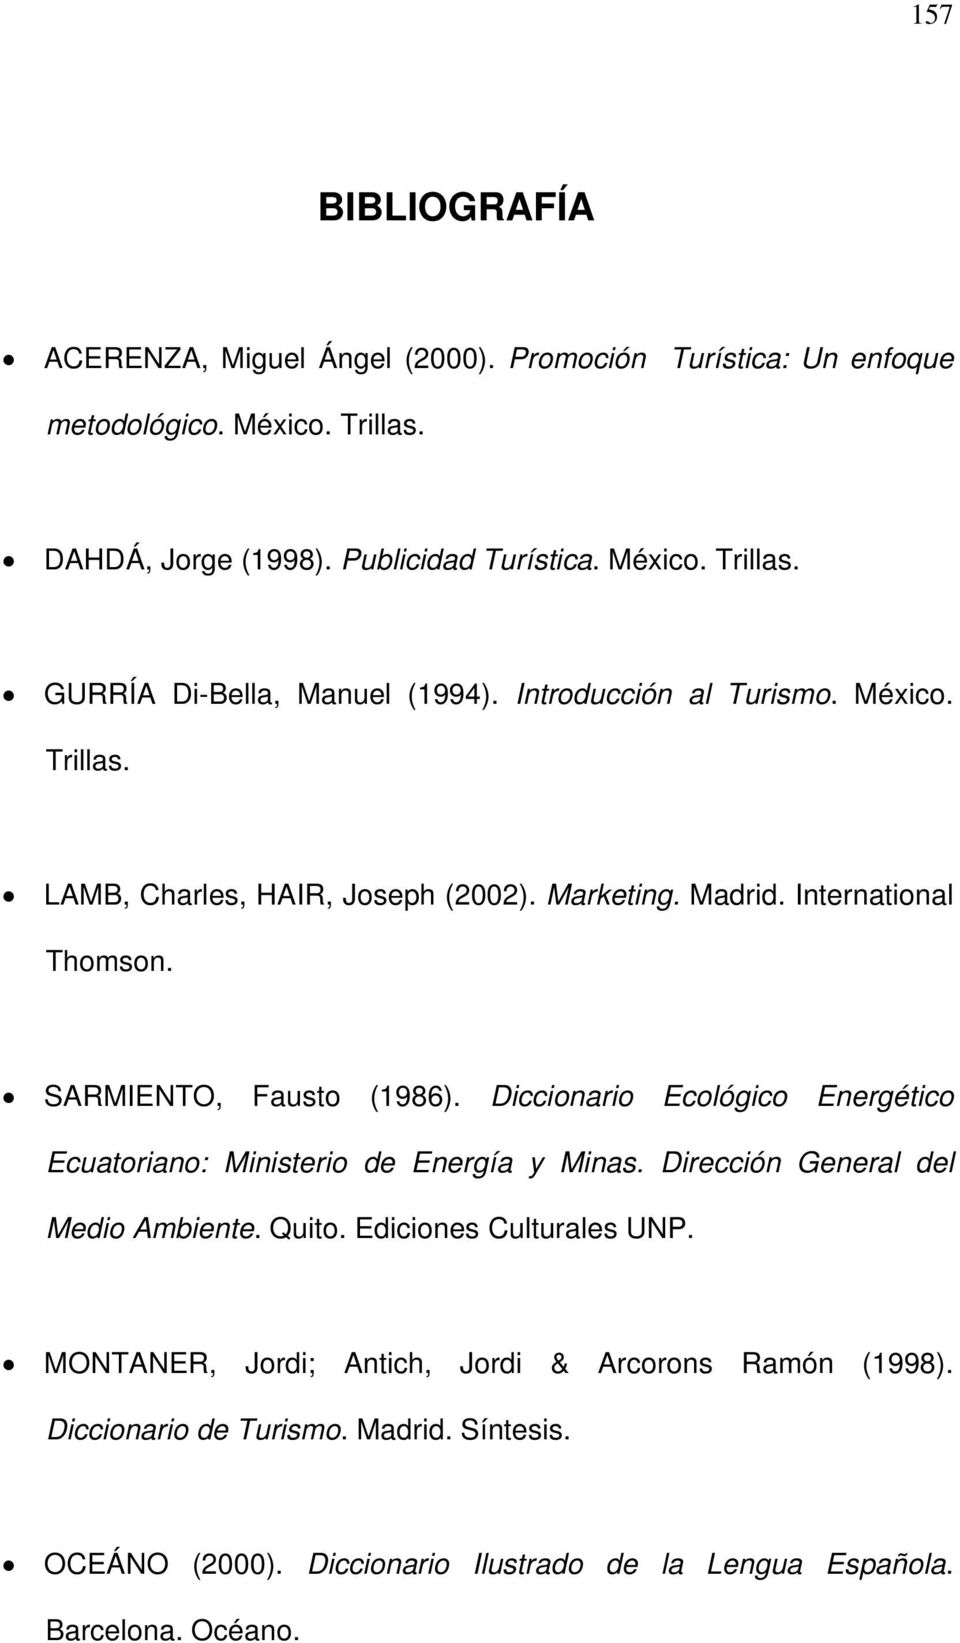 Diccionario Ecológico Energético Ecuatoriano: Ministerio de Energía y Minas. Dirección General del Medio Ambiente. Quito. Ediciones Culturales UNP.